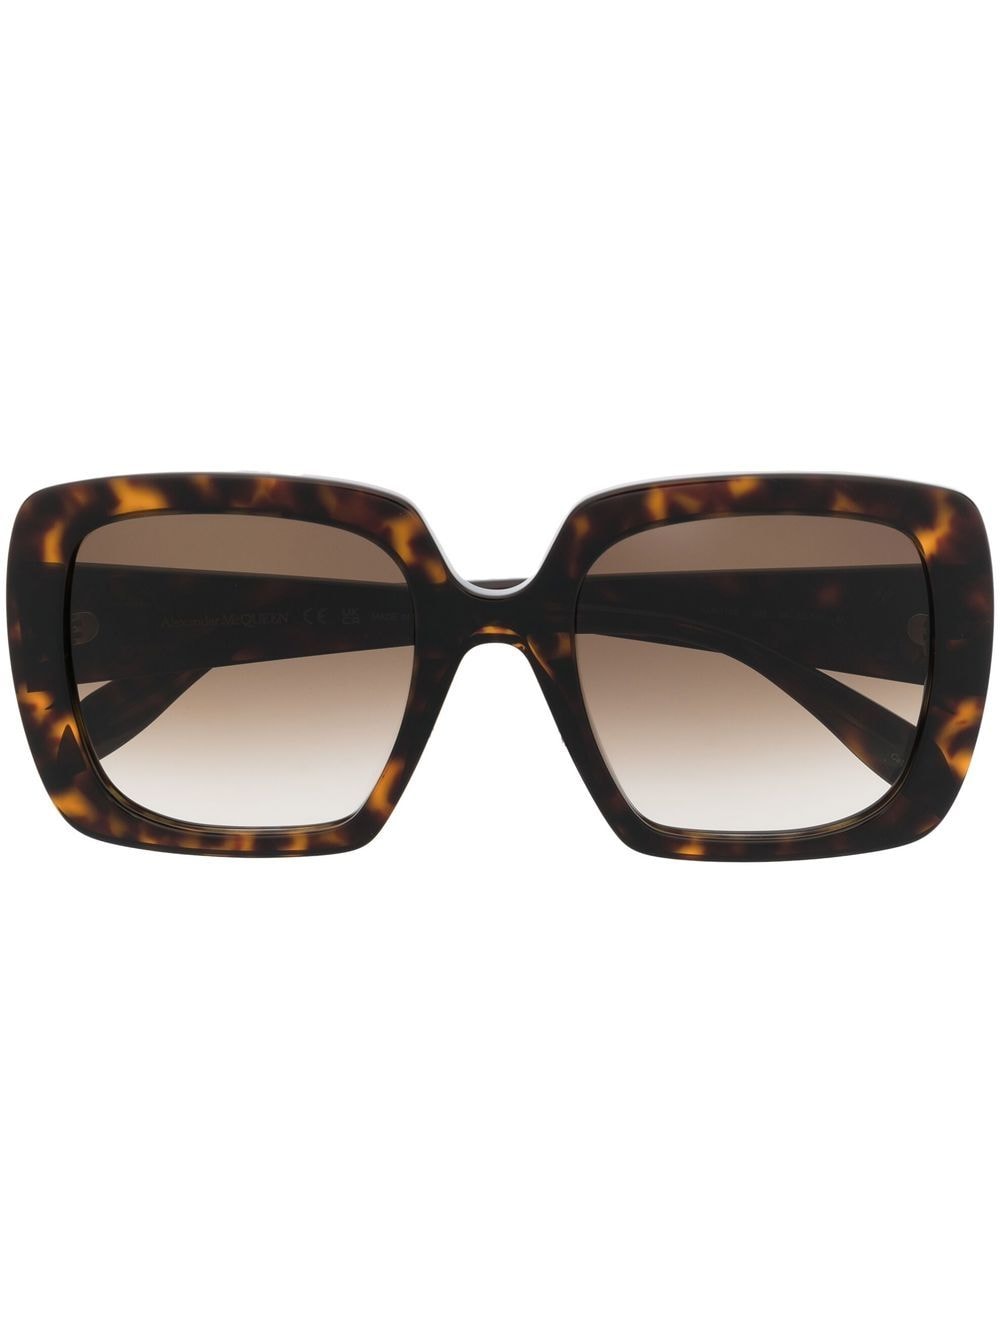 Alexander McQueen Eyewear tortoiseshell square frame sunglasses - Brown von Alexander McQueen Eyewear